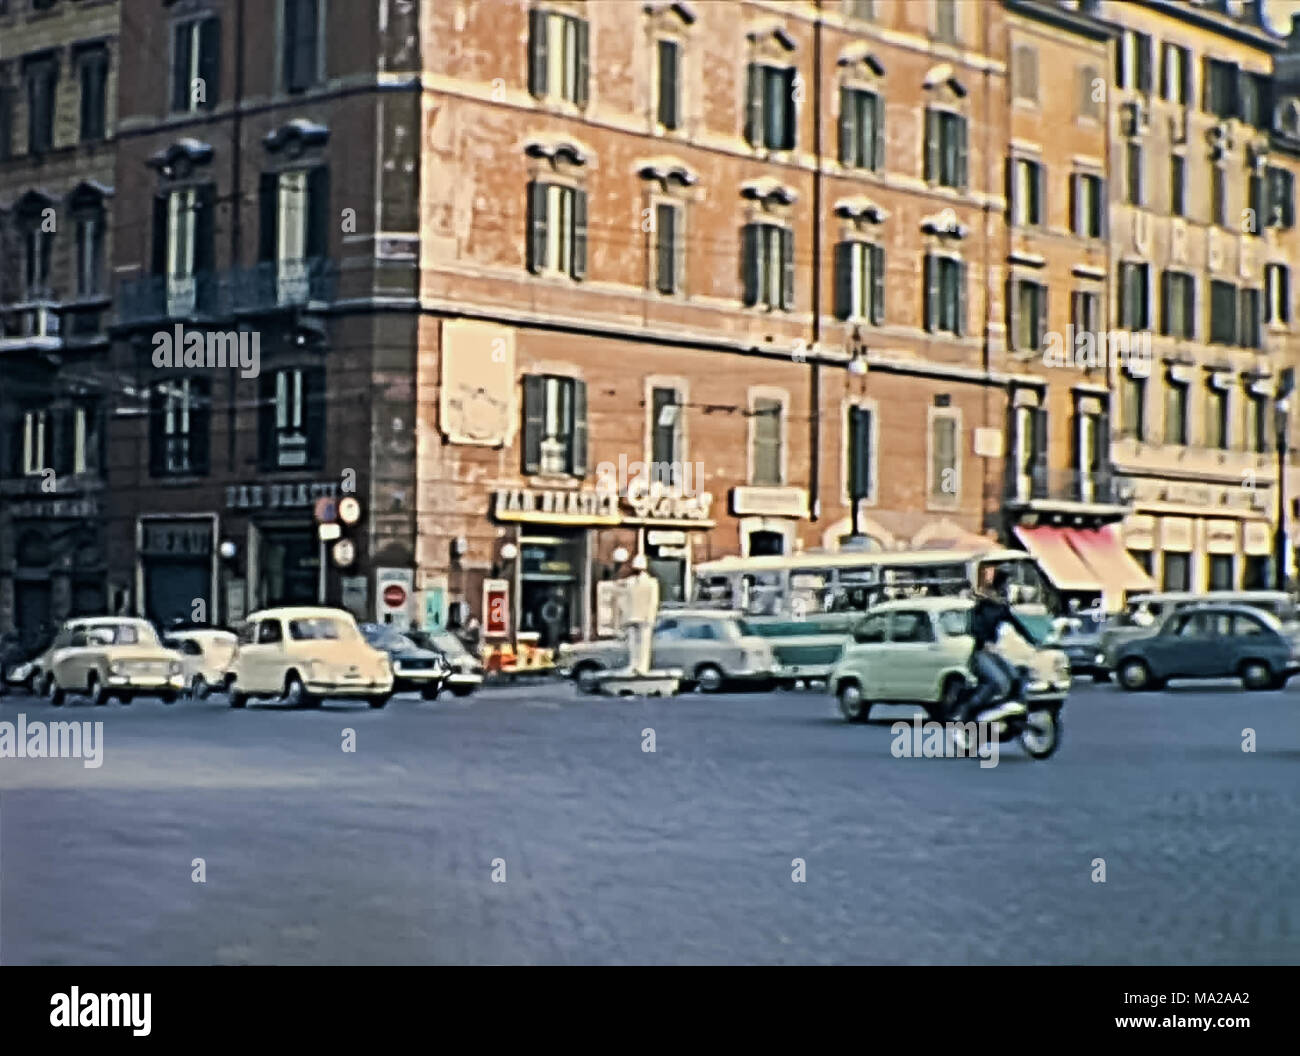 Roma, Italia - circa 1967: Piazza Venezia con la gente e la classica degli anni sessanta la Fiat auto a Roma accanto al Campidoglio e Vittoriano Altare della Patria, monumento patriottico. Storica immagine ripristinata. Foto Stock